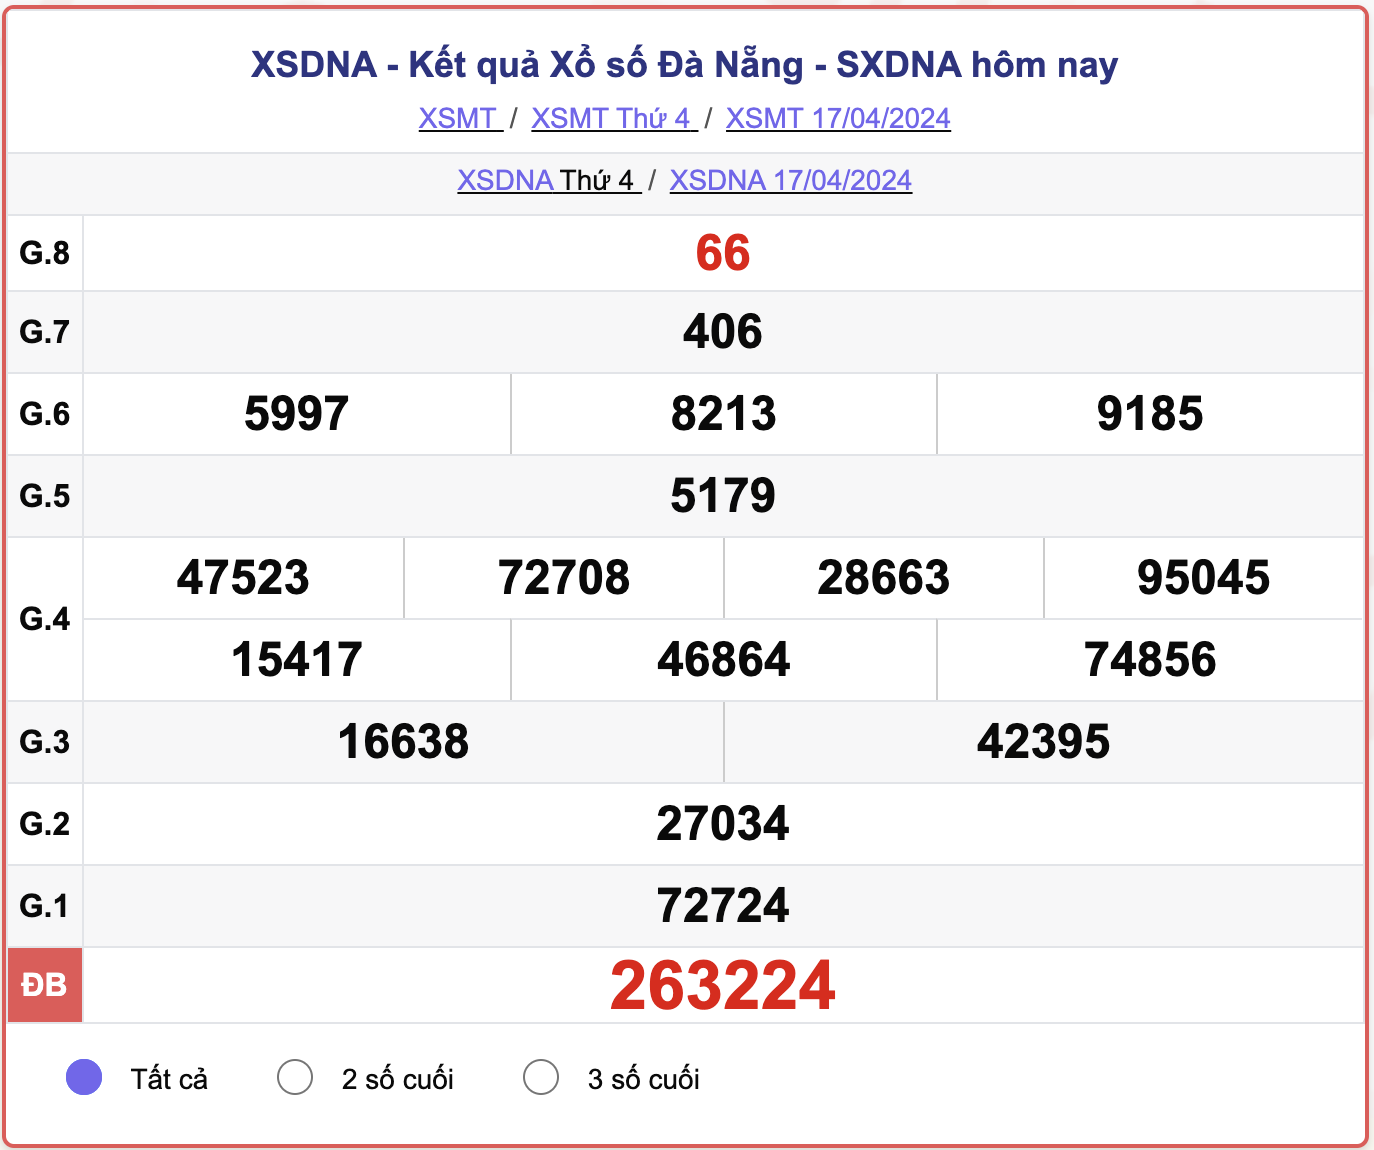 XSDNA thứ 4, kết quả xổ số Đà Nẵng ngày 17/4/2024.